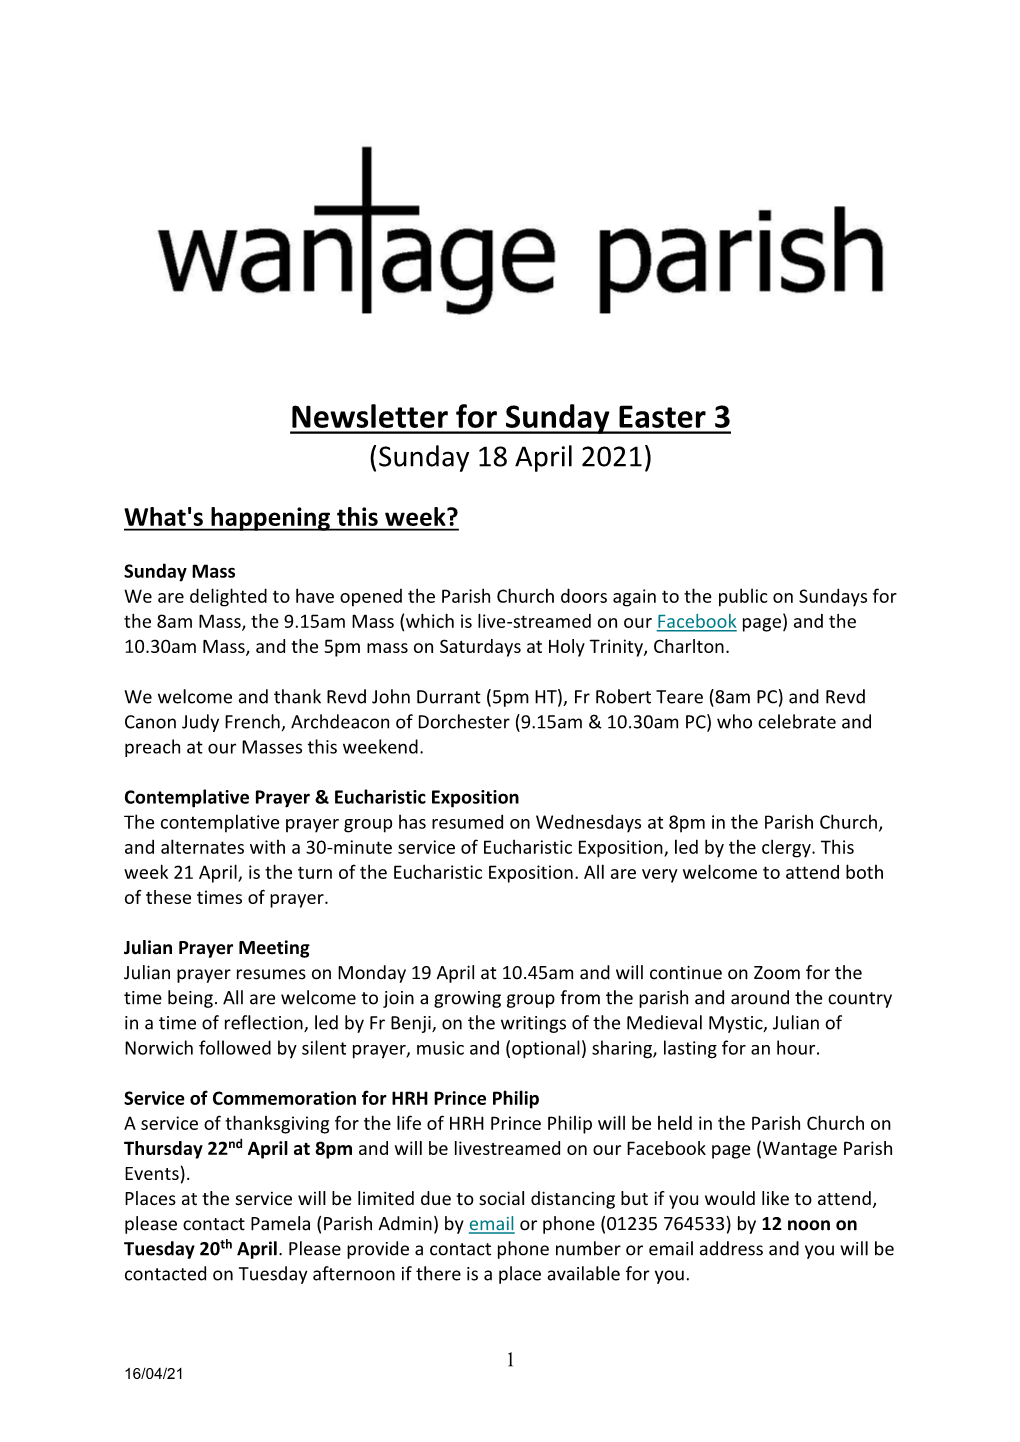 Newsletter for Sunday Easter 3 (Sunday 18 April 2021)